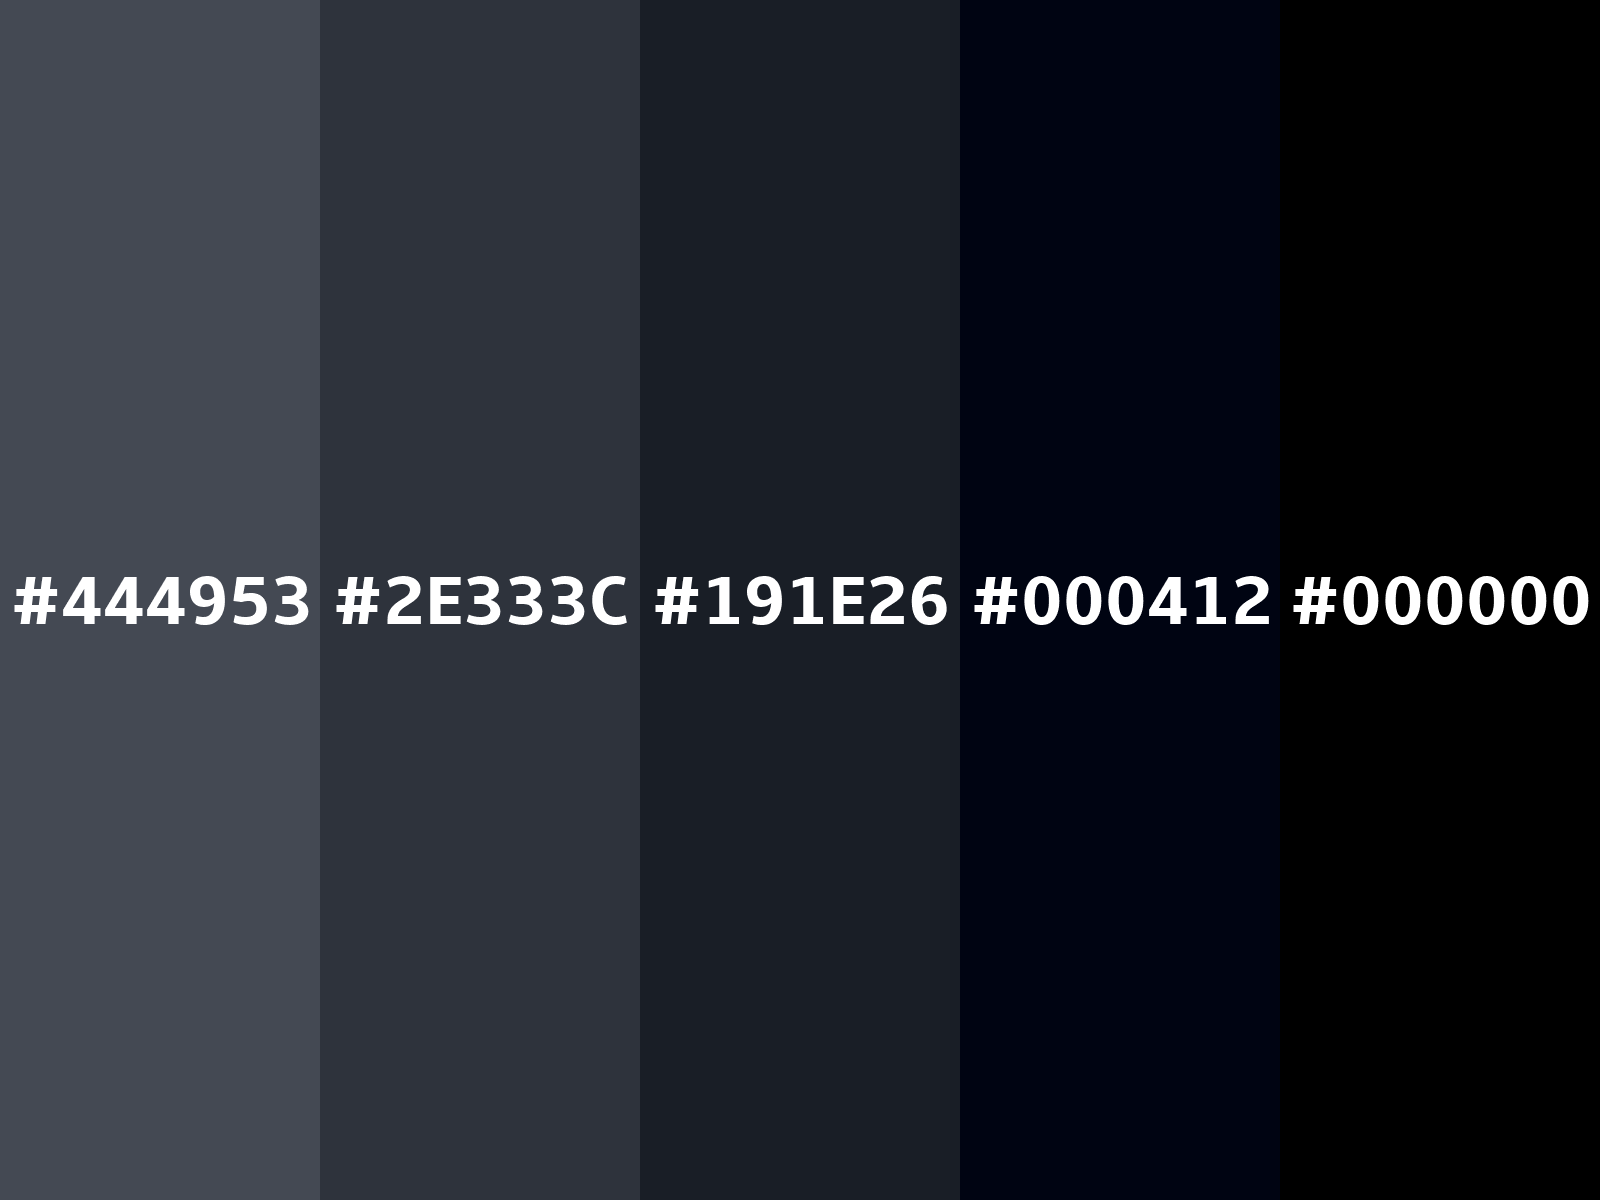 Chuyển đổi màu sắc RGB 68, 73, 83 sẽ đem đến cho bạn một bức hình hoàn toàn khác lạ so với bản gốc. Những điểm nhấn trước đây sẽ được tôn lên hơn và tạo ra không gian độc đáo. Hãy dành vài phút để thưởng thức một tác phẩm nghệ thuật mang đậm chất chỉnh sửa màu sắc.